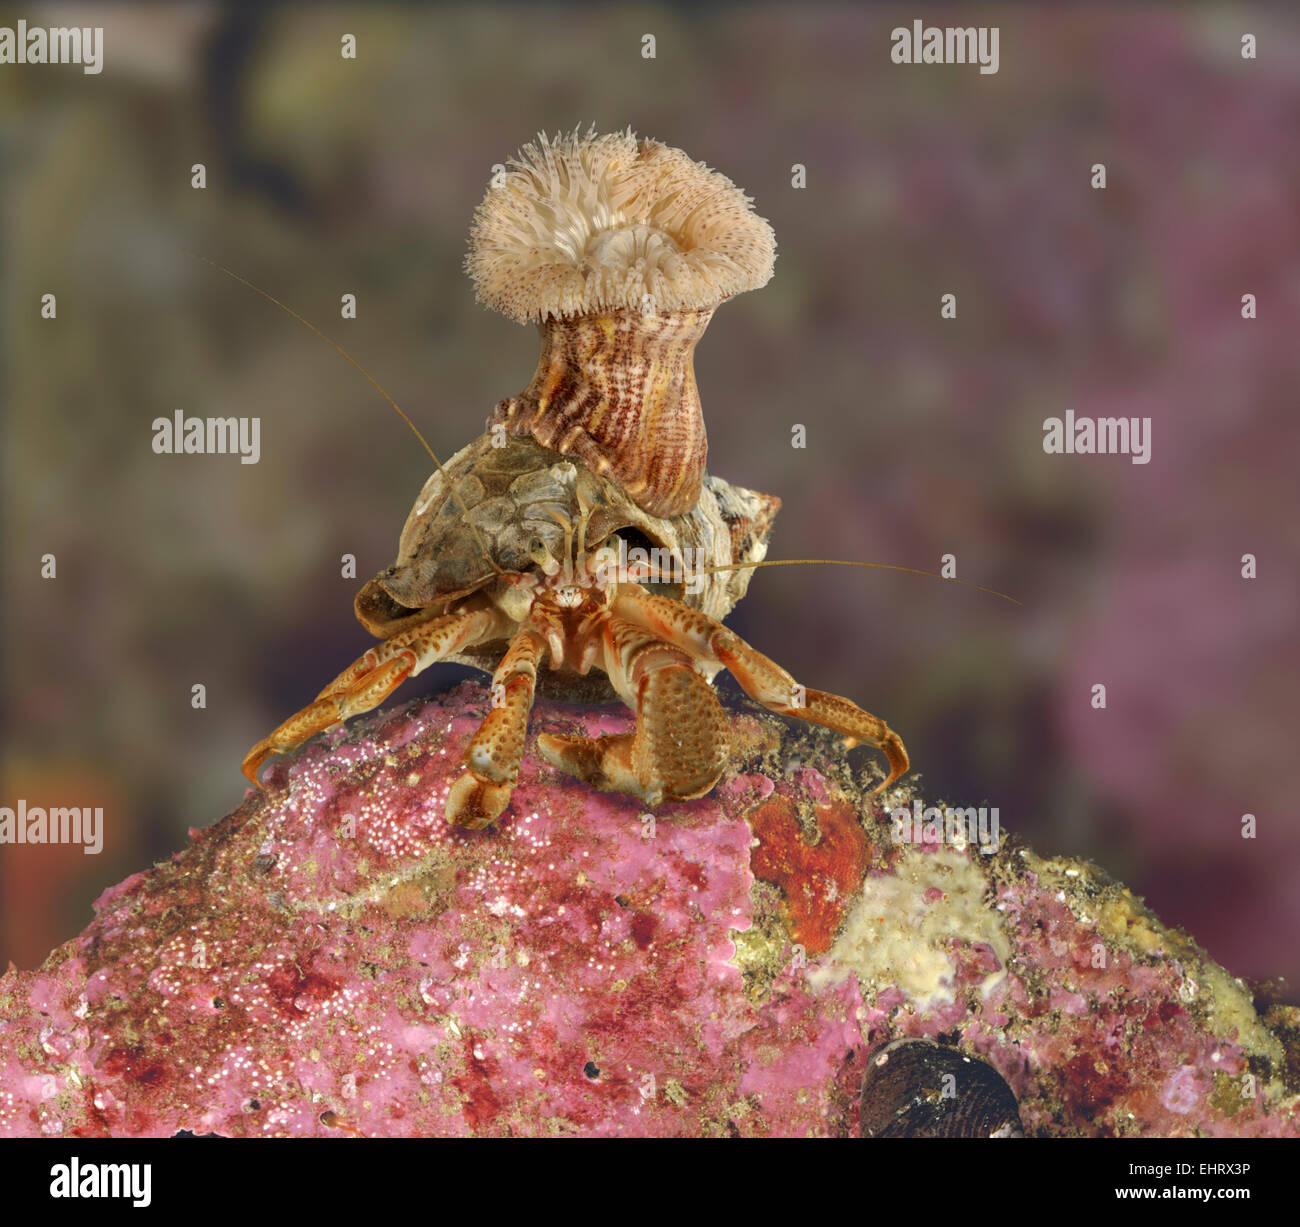 Anémona Calliactis parasitica en buccino ocupada por shell común - cangrejo ermitaño Pagurus bernhardus Foto de stock